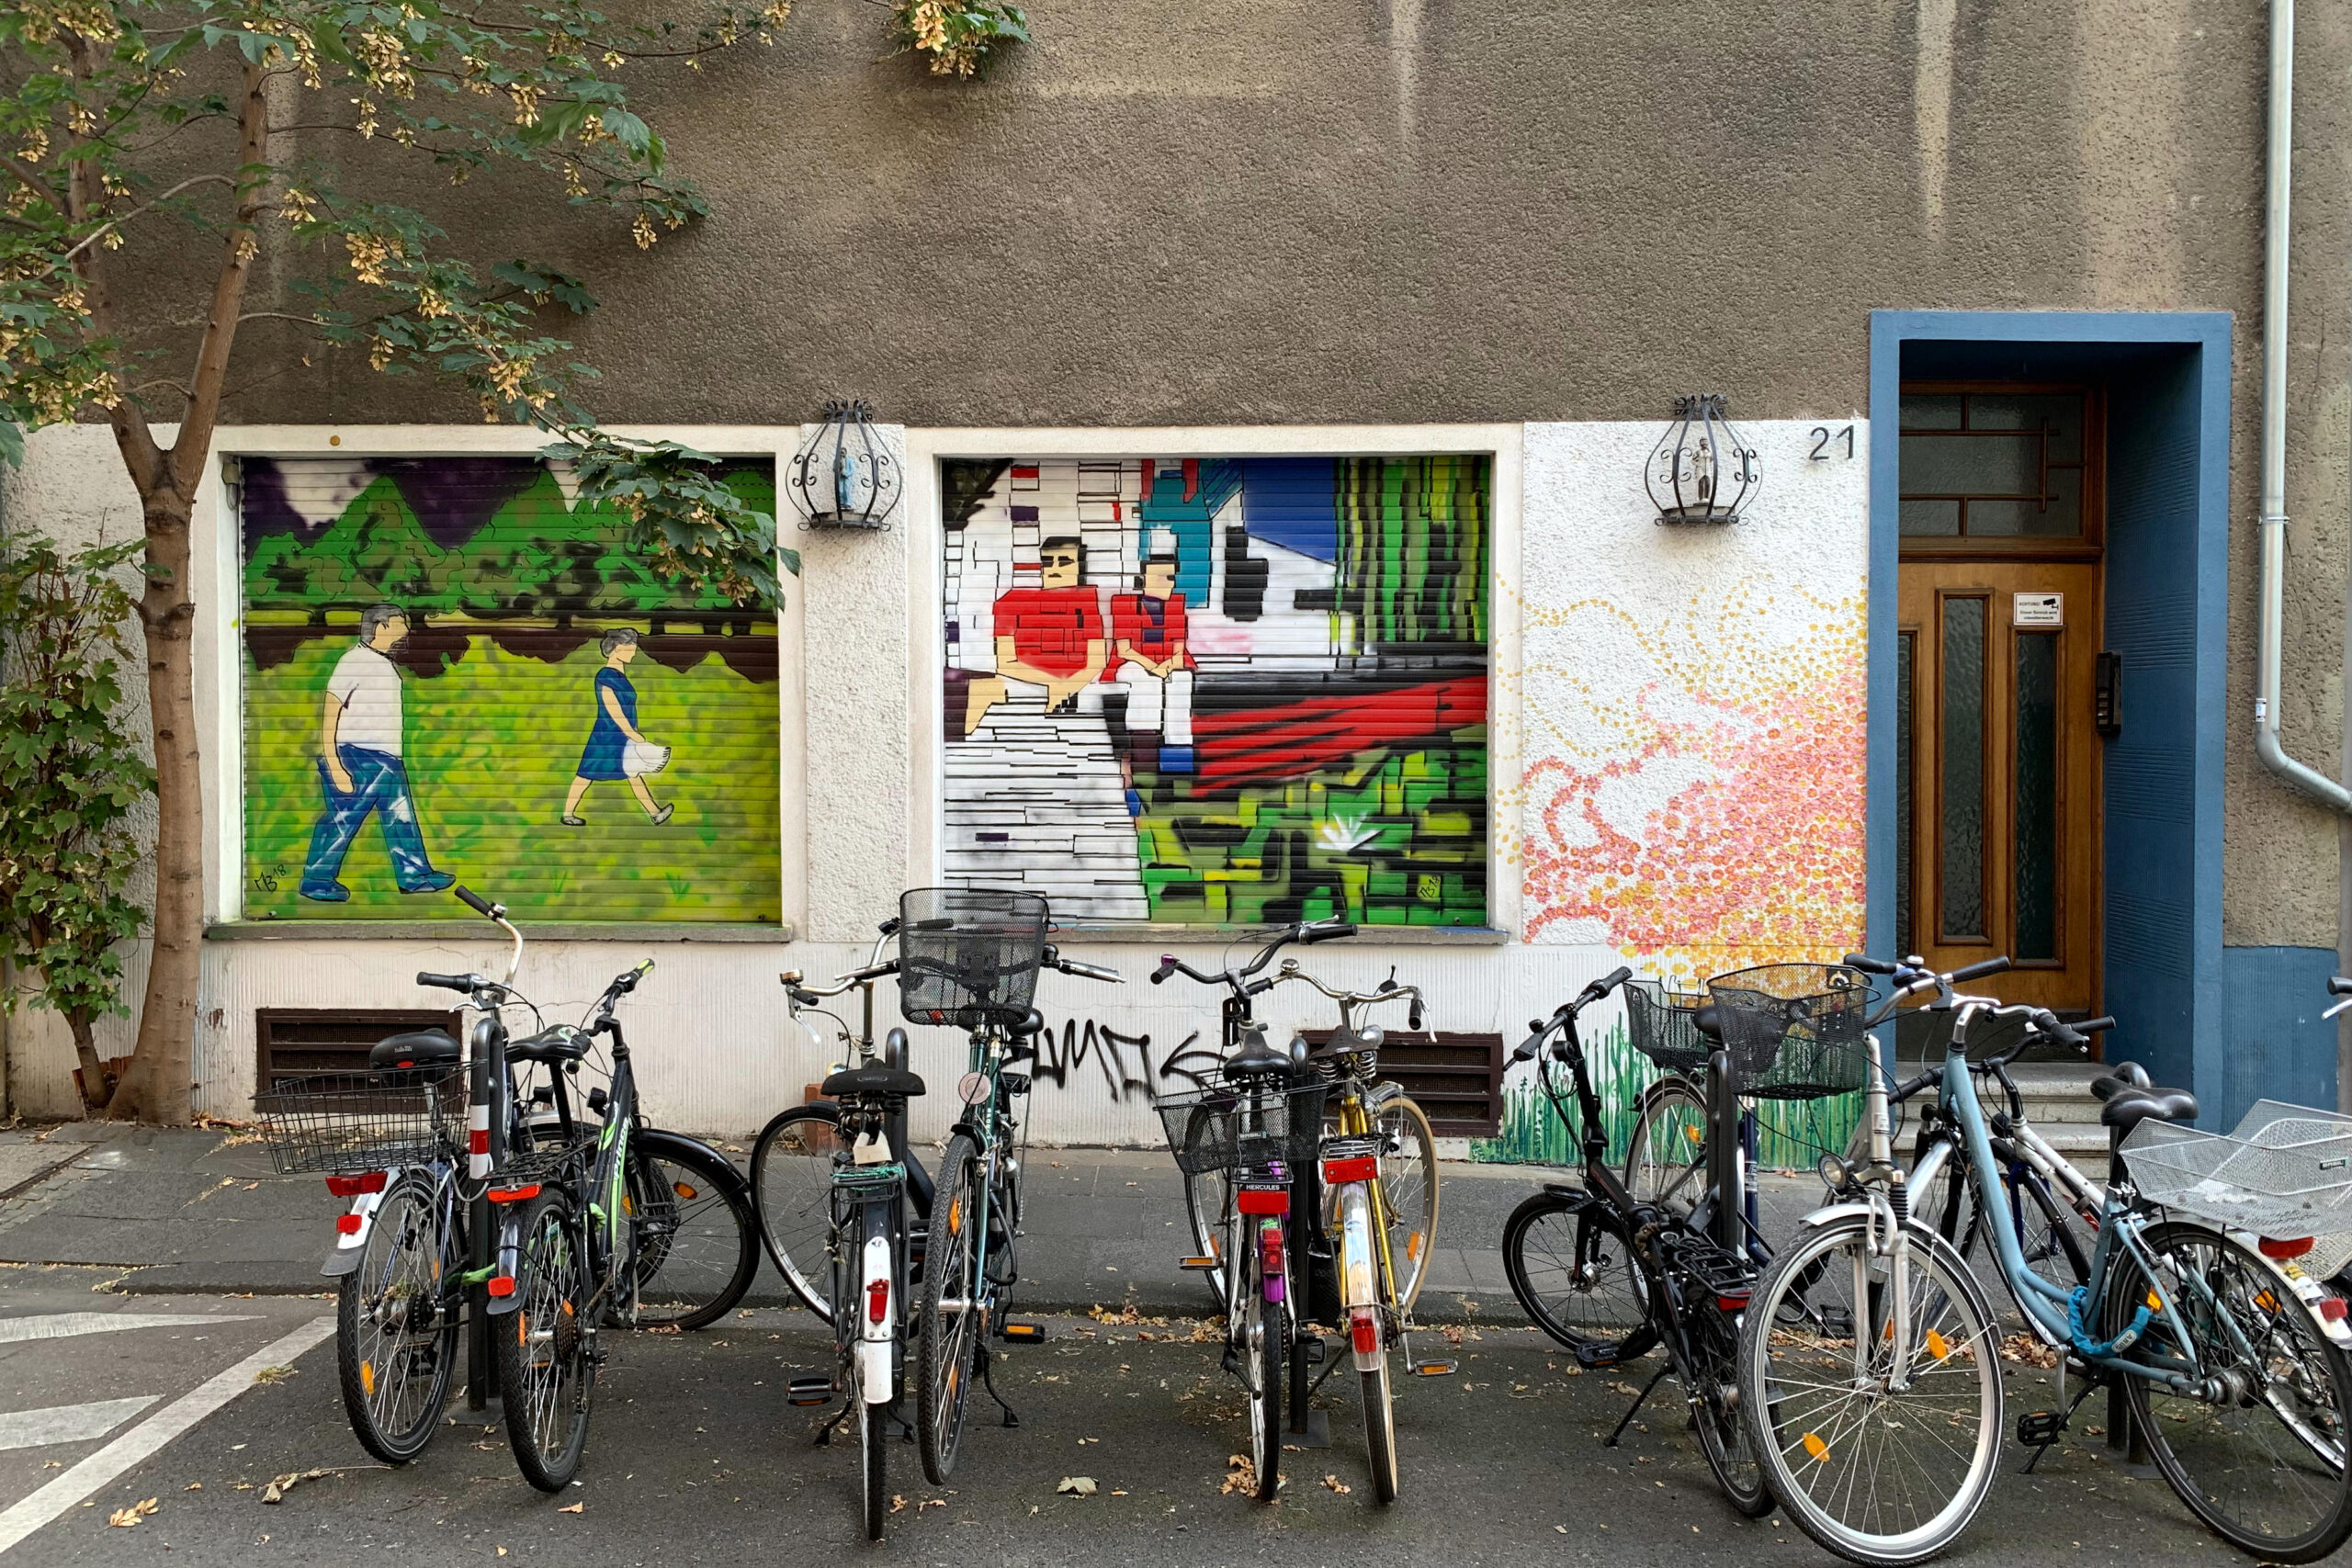 Fahrräder vor einer Fassade, die Rolläden der Fenster haben Graffiti-MOtive